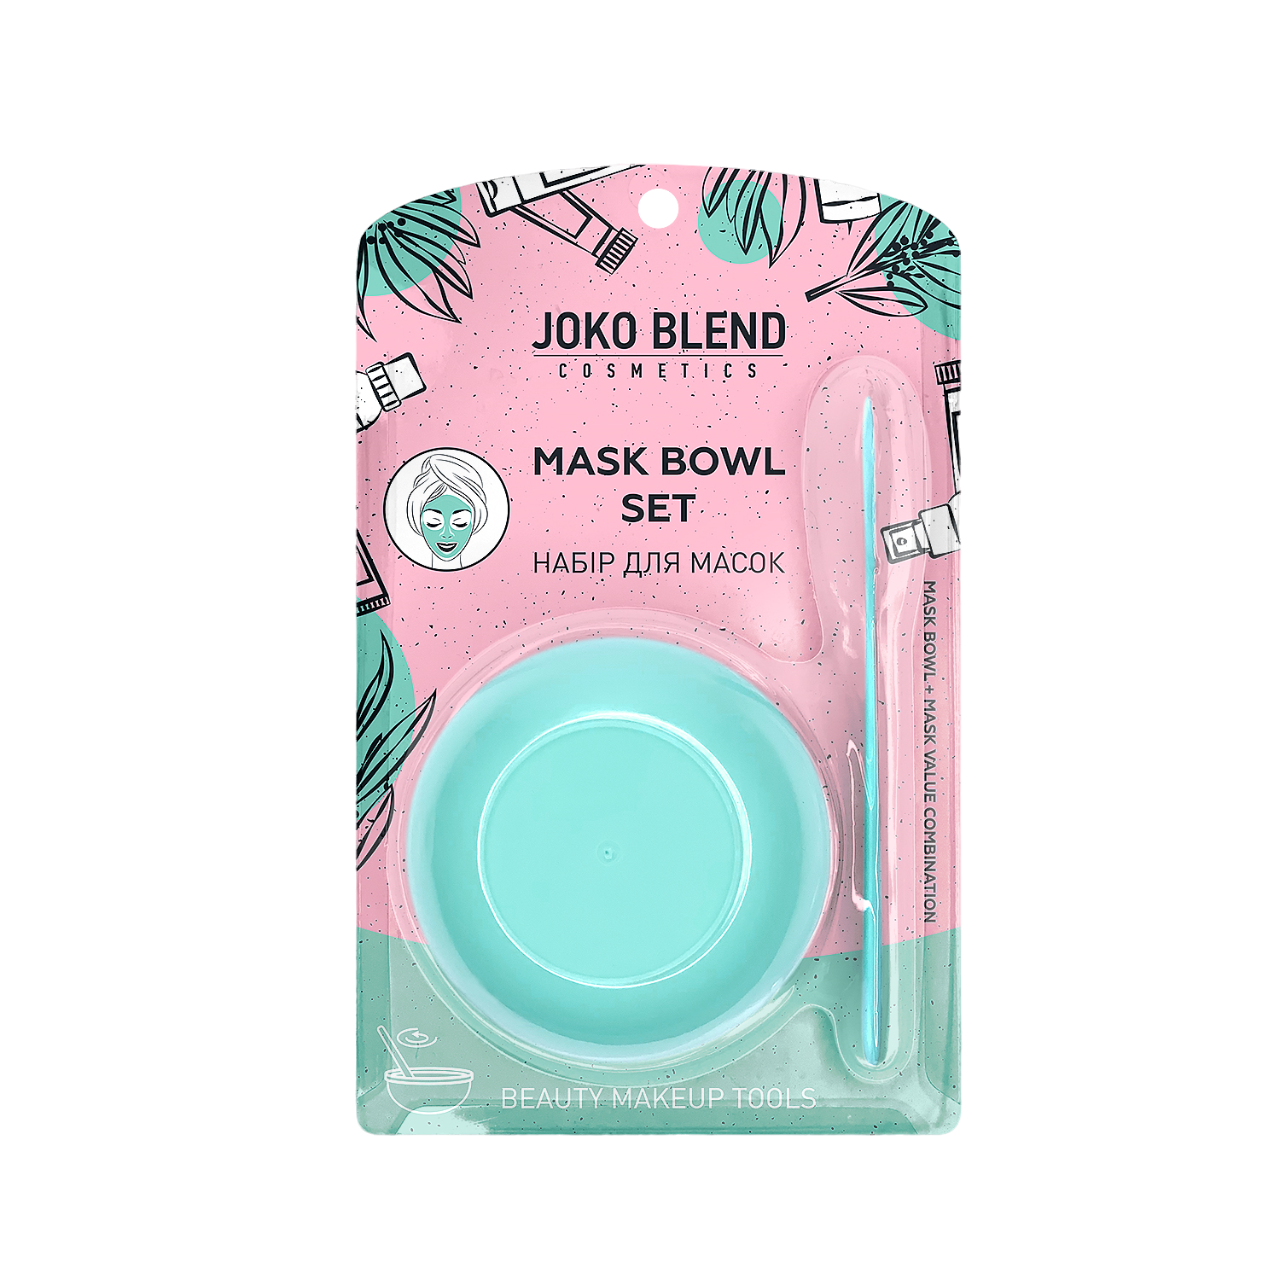 Набір для масок Joko Blend Mask Bowl Set, бірюзовий - фото 1